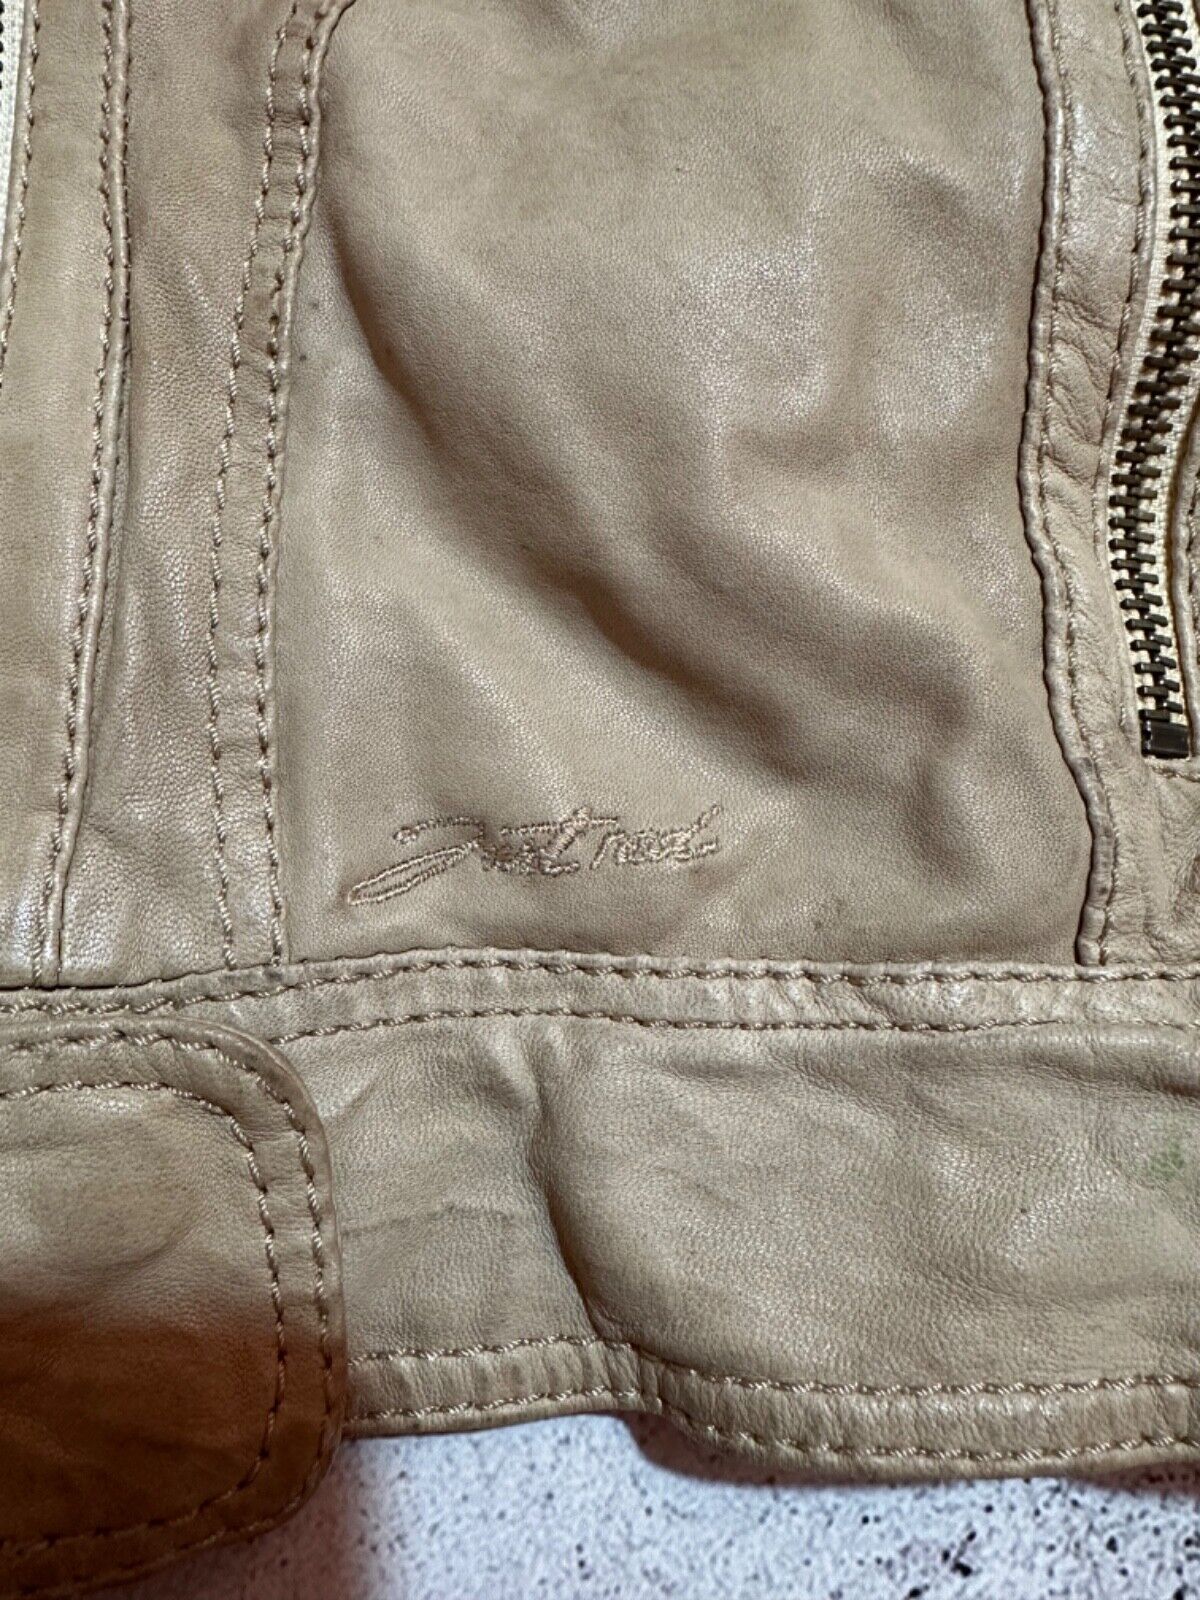 redskins vintage leather jacket - image 8